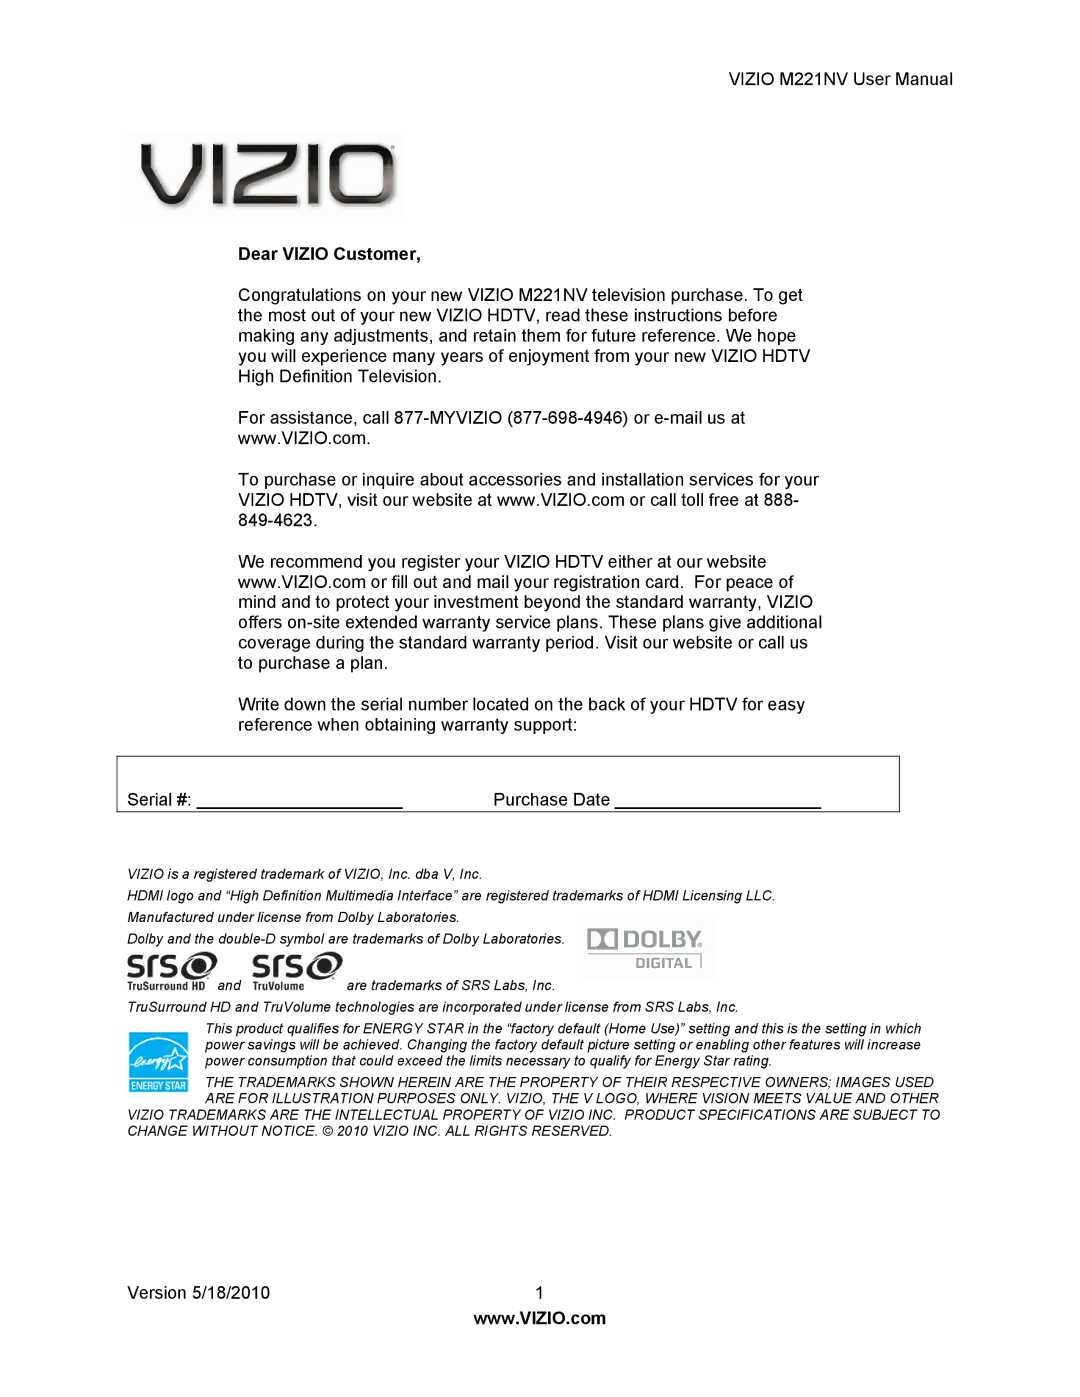 Vizio M221NV user manual Dear Vizio Customer 